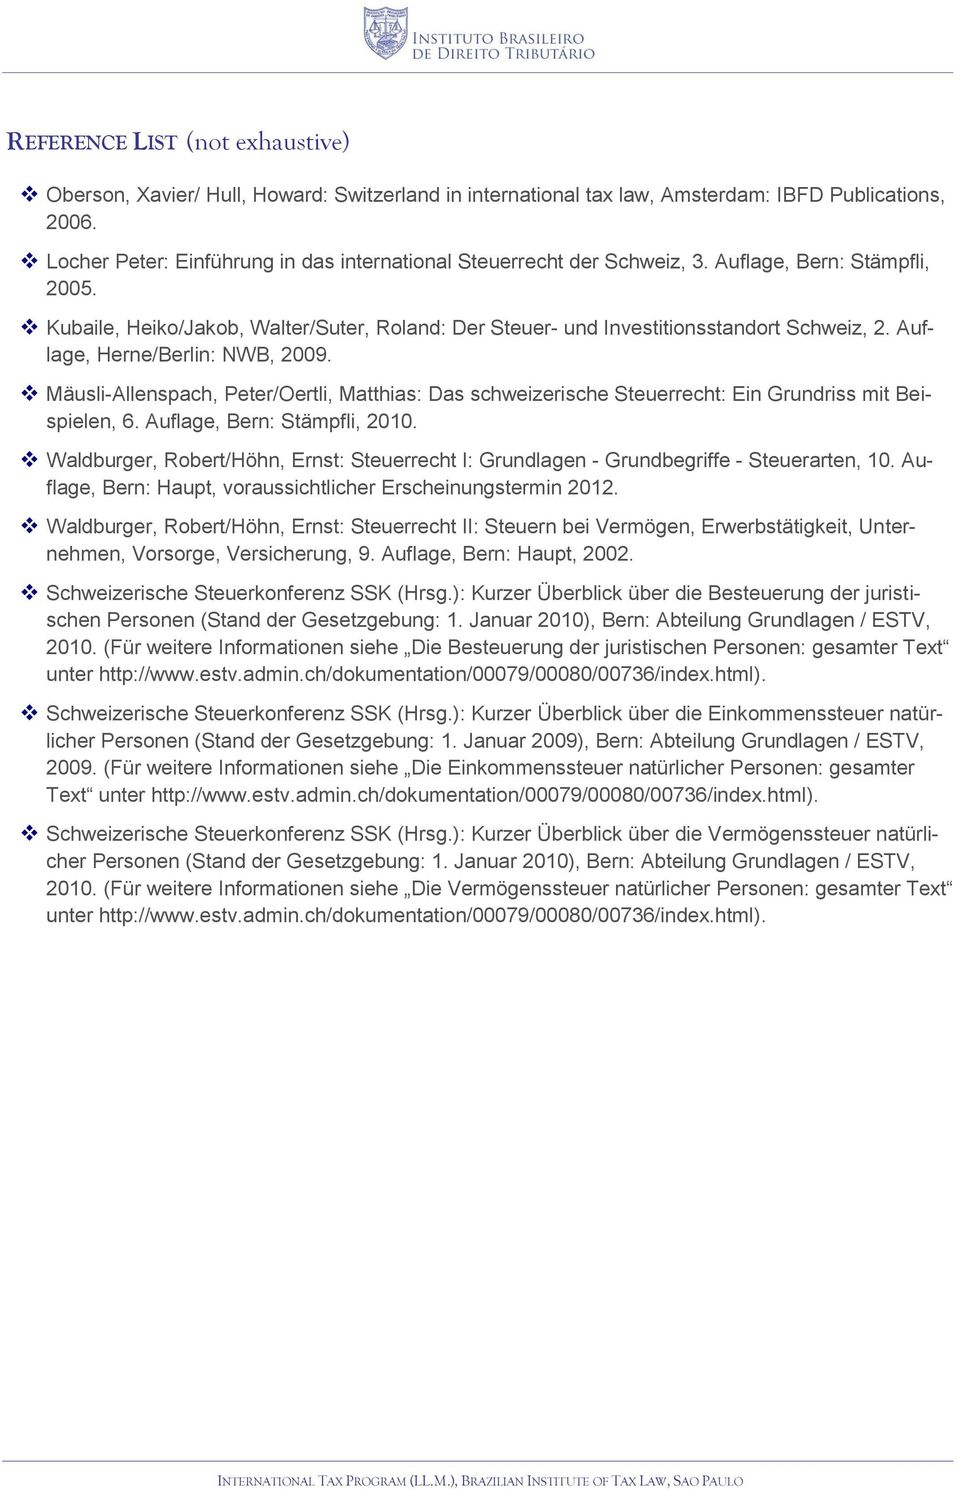 Auflage, Herne/Berlin: NWB, 2009. Mäusli-Allenspach, Peter/Oertli, Matthias: Das schweizerische Steuerrecht: Ein Grundriss mit Beispielen, 6. Auflage, Bern: Stämpfli, 2010.